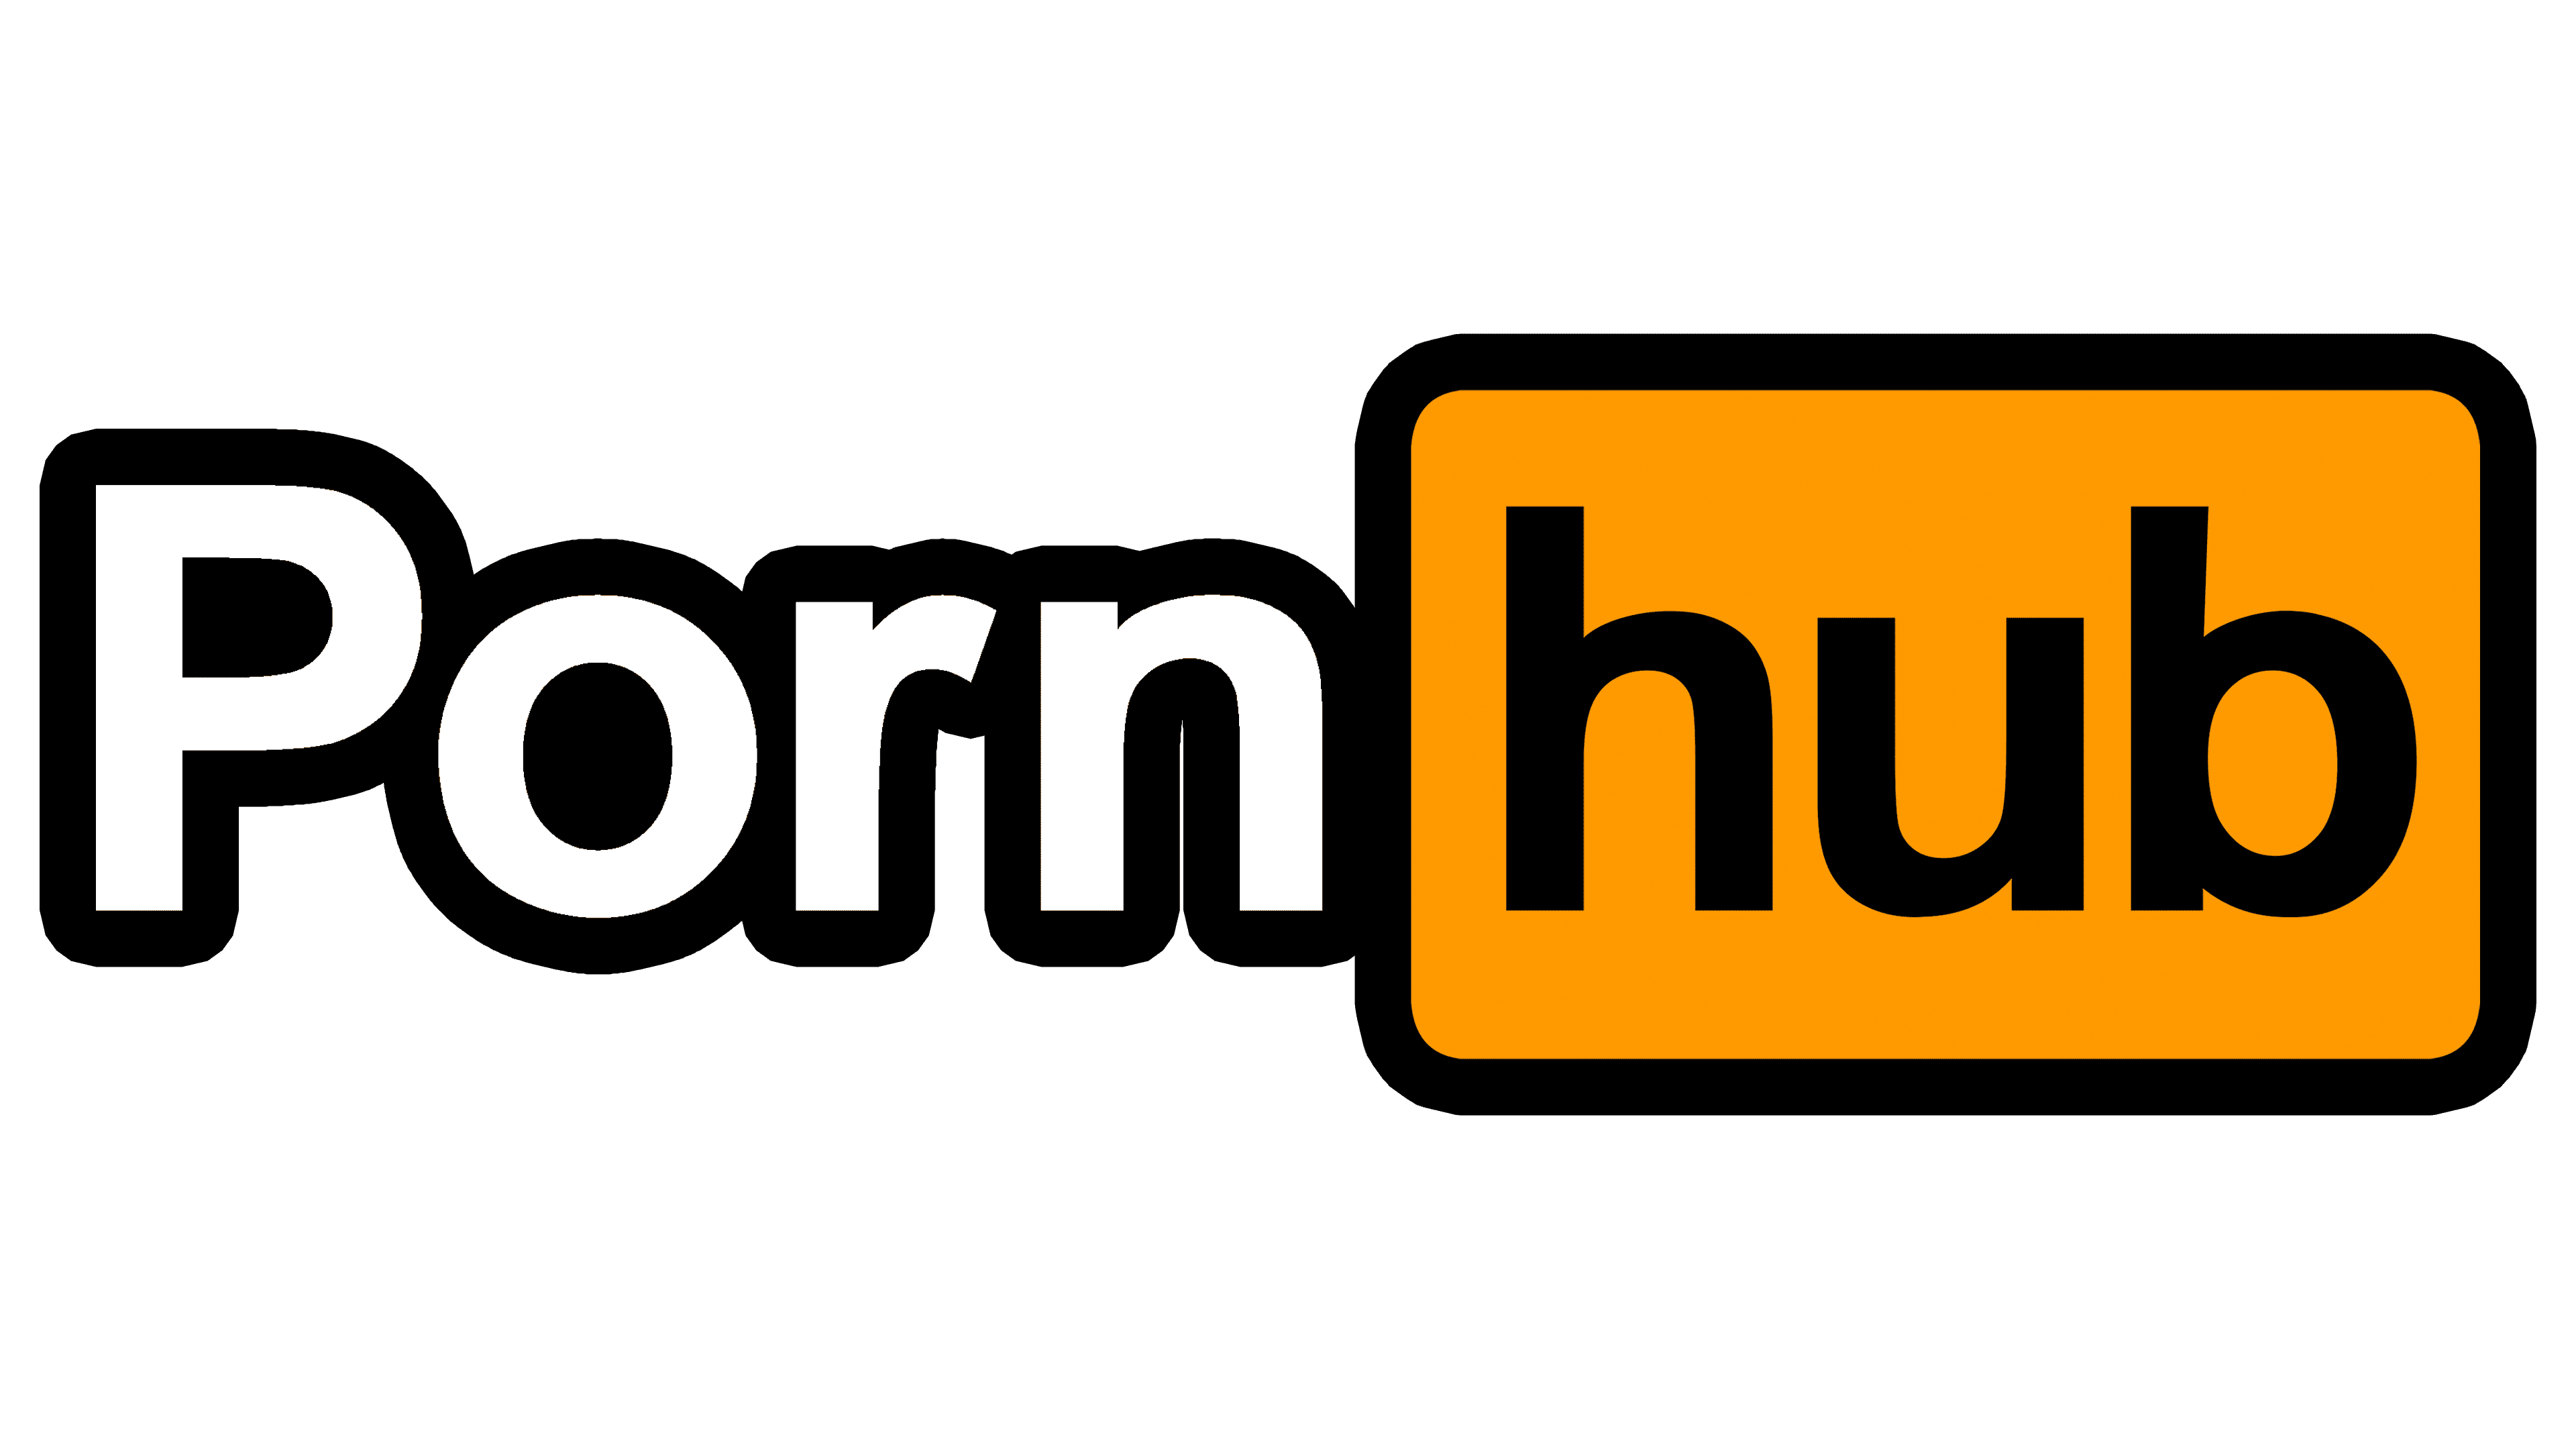 Amateur gay pornhub logo